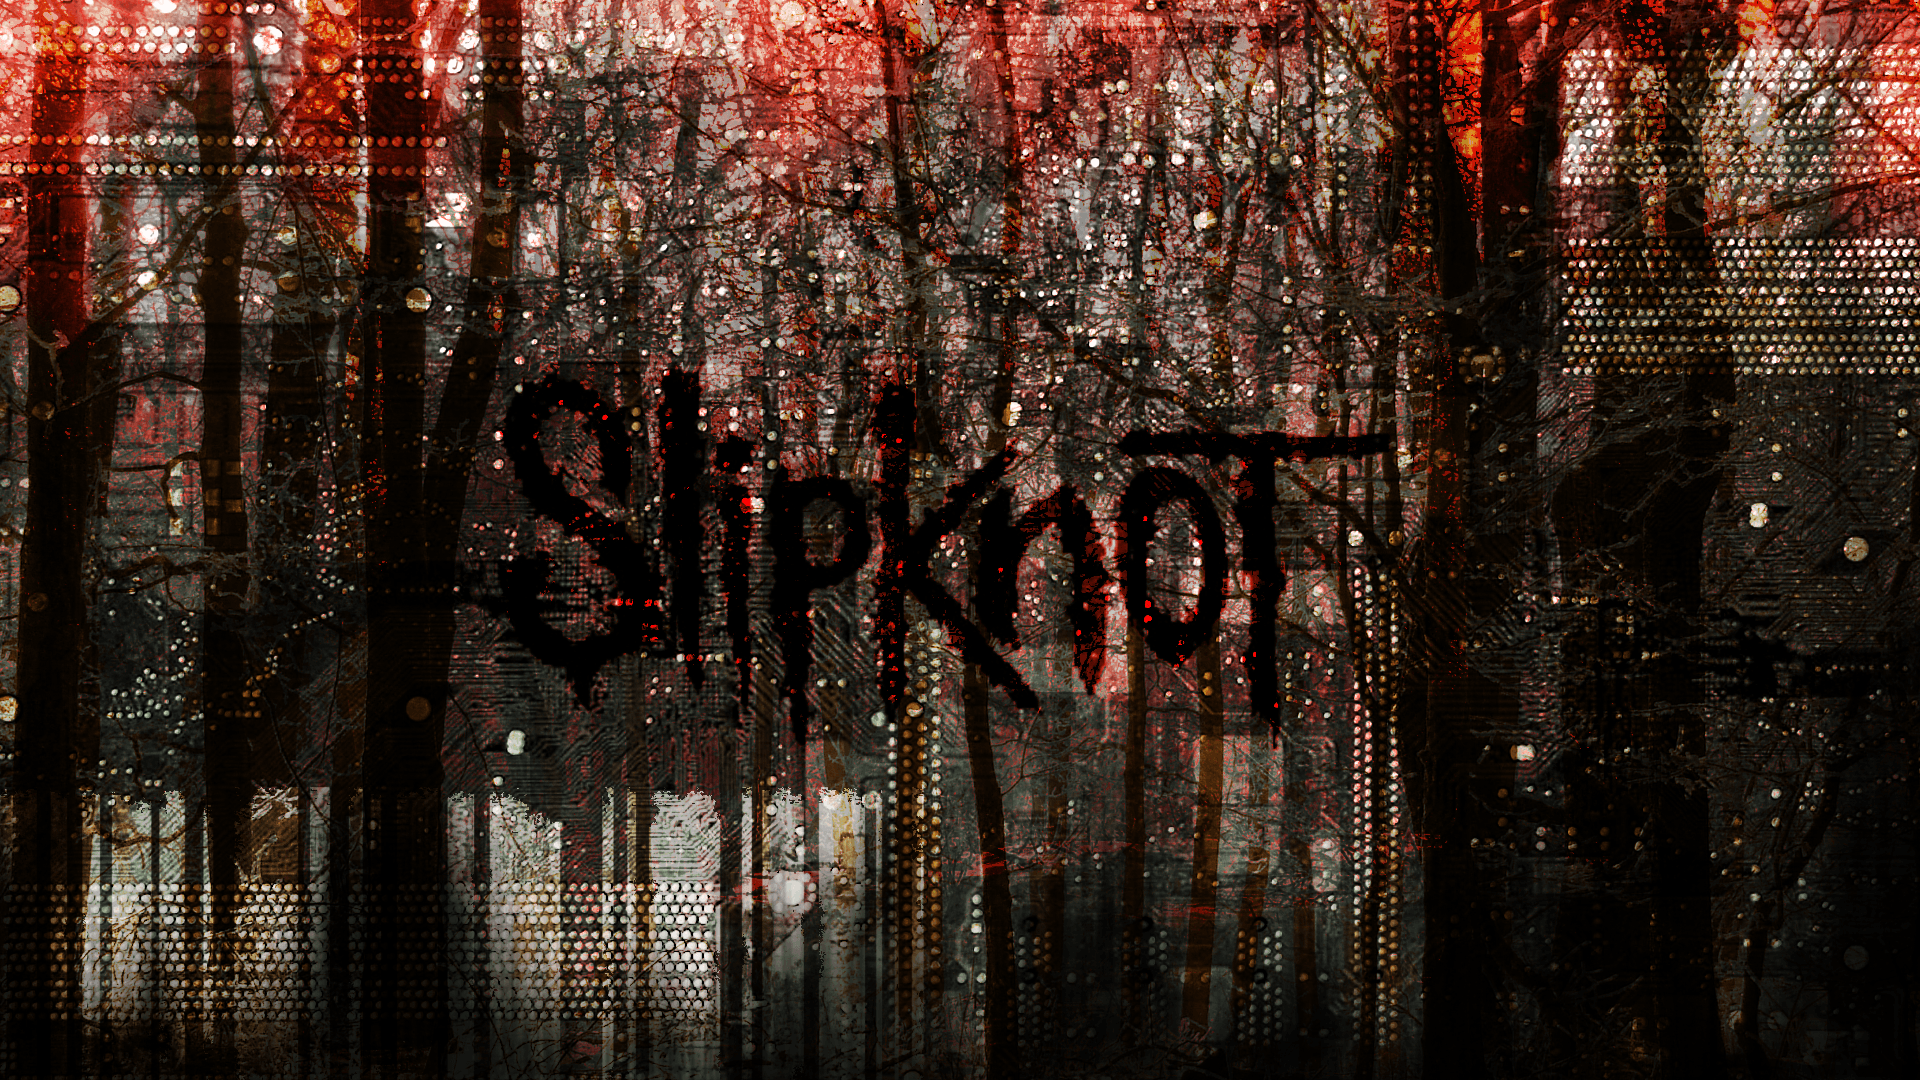 Here&;s a Slipknot wallpaper I made